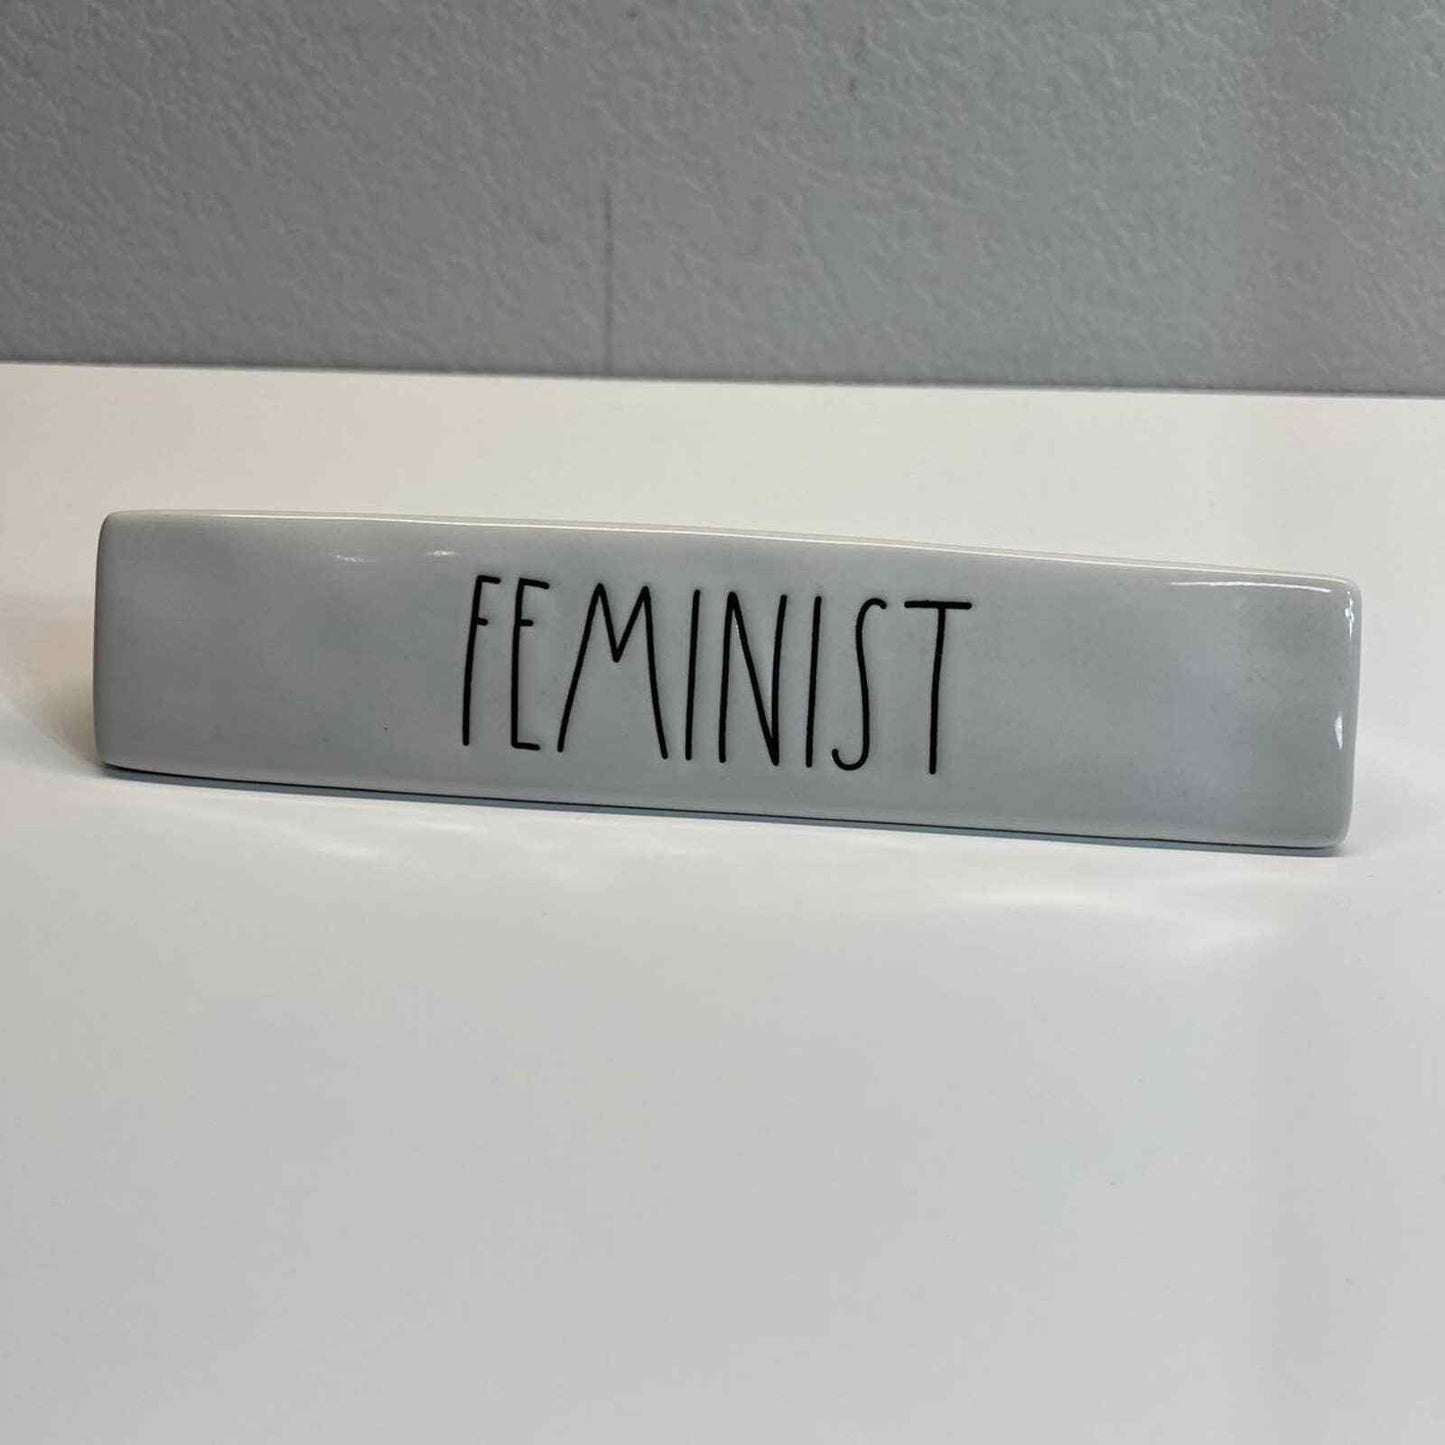 Rae Dunn Feminist Desk Sign White Triangle Women's RightsShape Office Decor